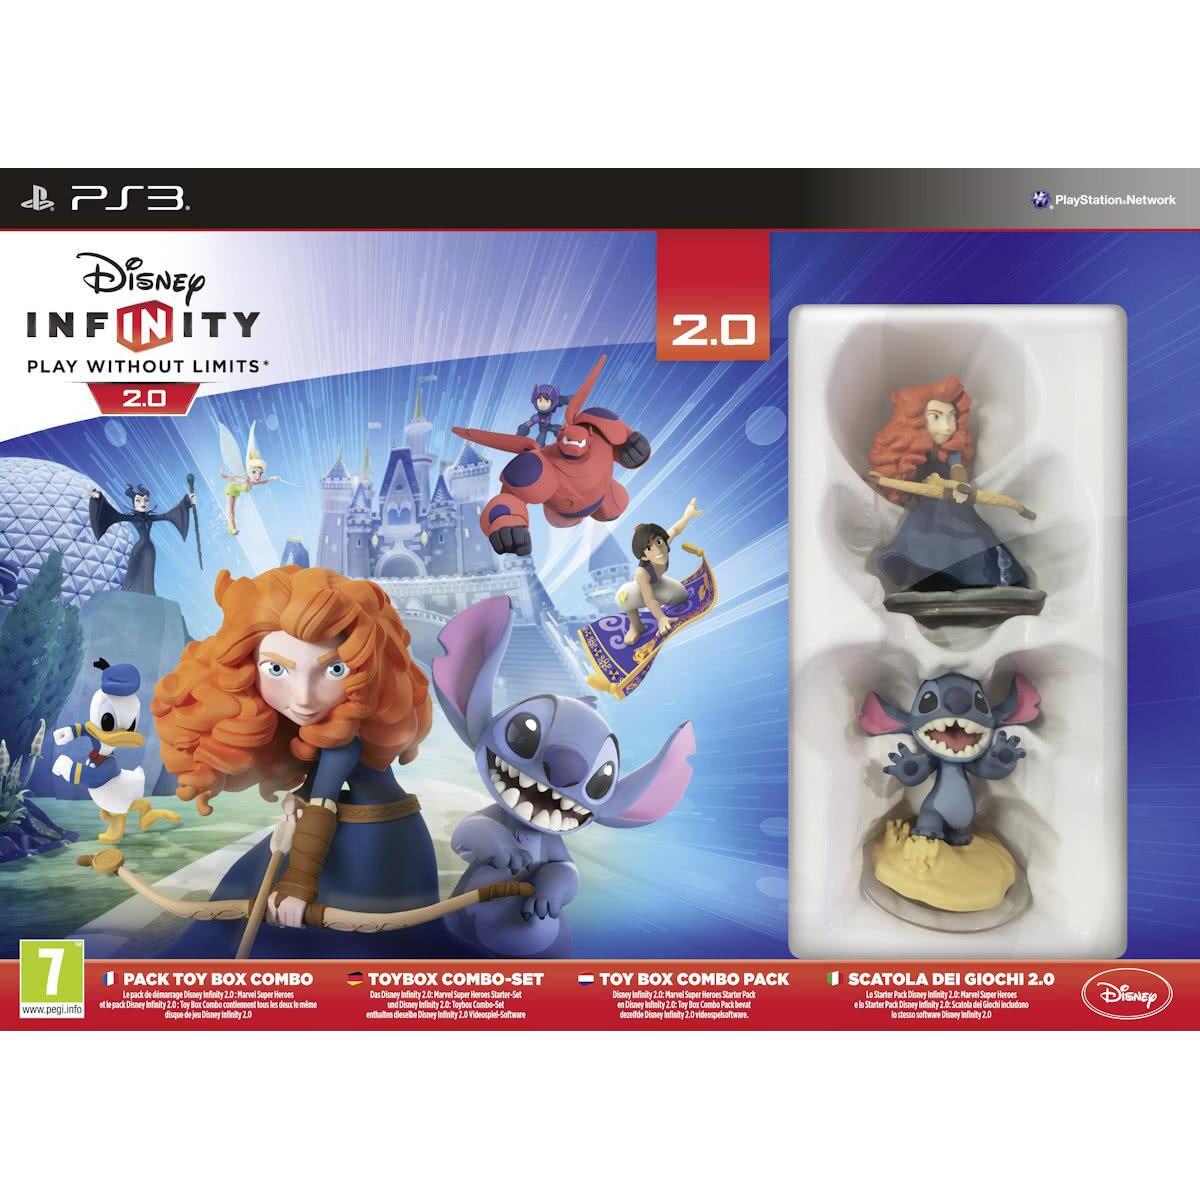 draad Afstudeeralbum hebzuchtig Disney Infinity 2.0: Toy Box Combo Pack (PS3) kopen - €16.99